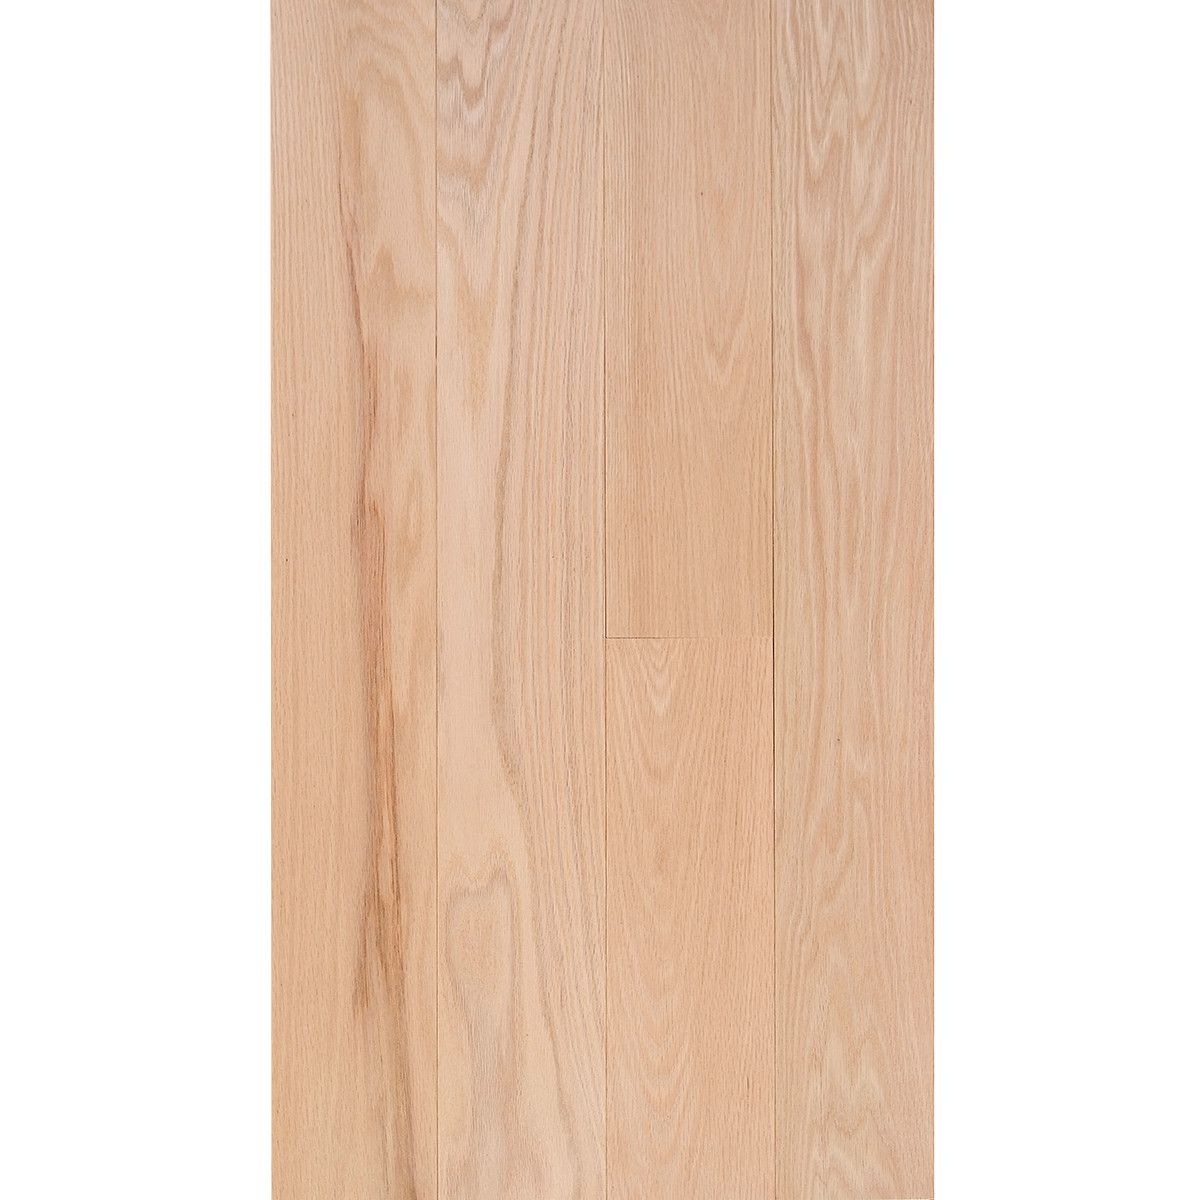 15 Awesome Unfinished Oak Hardwood Flooring for Sale 2024 free download unfinished oak hardwood flooring for sale of red oak 3 4 x 5 select grade flooring throughout fs 5 redoak select em flooring